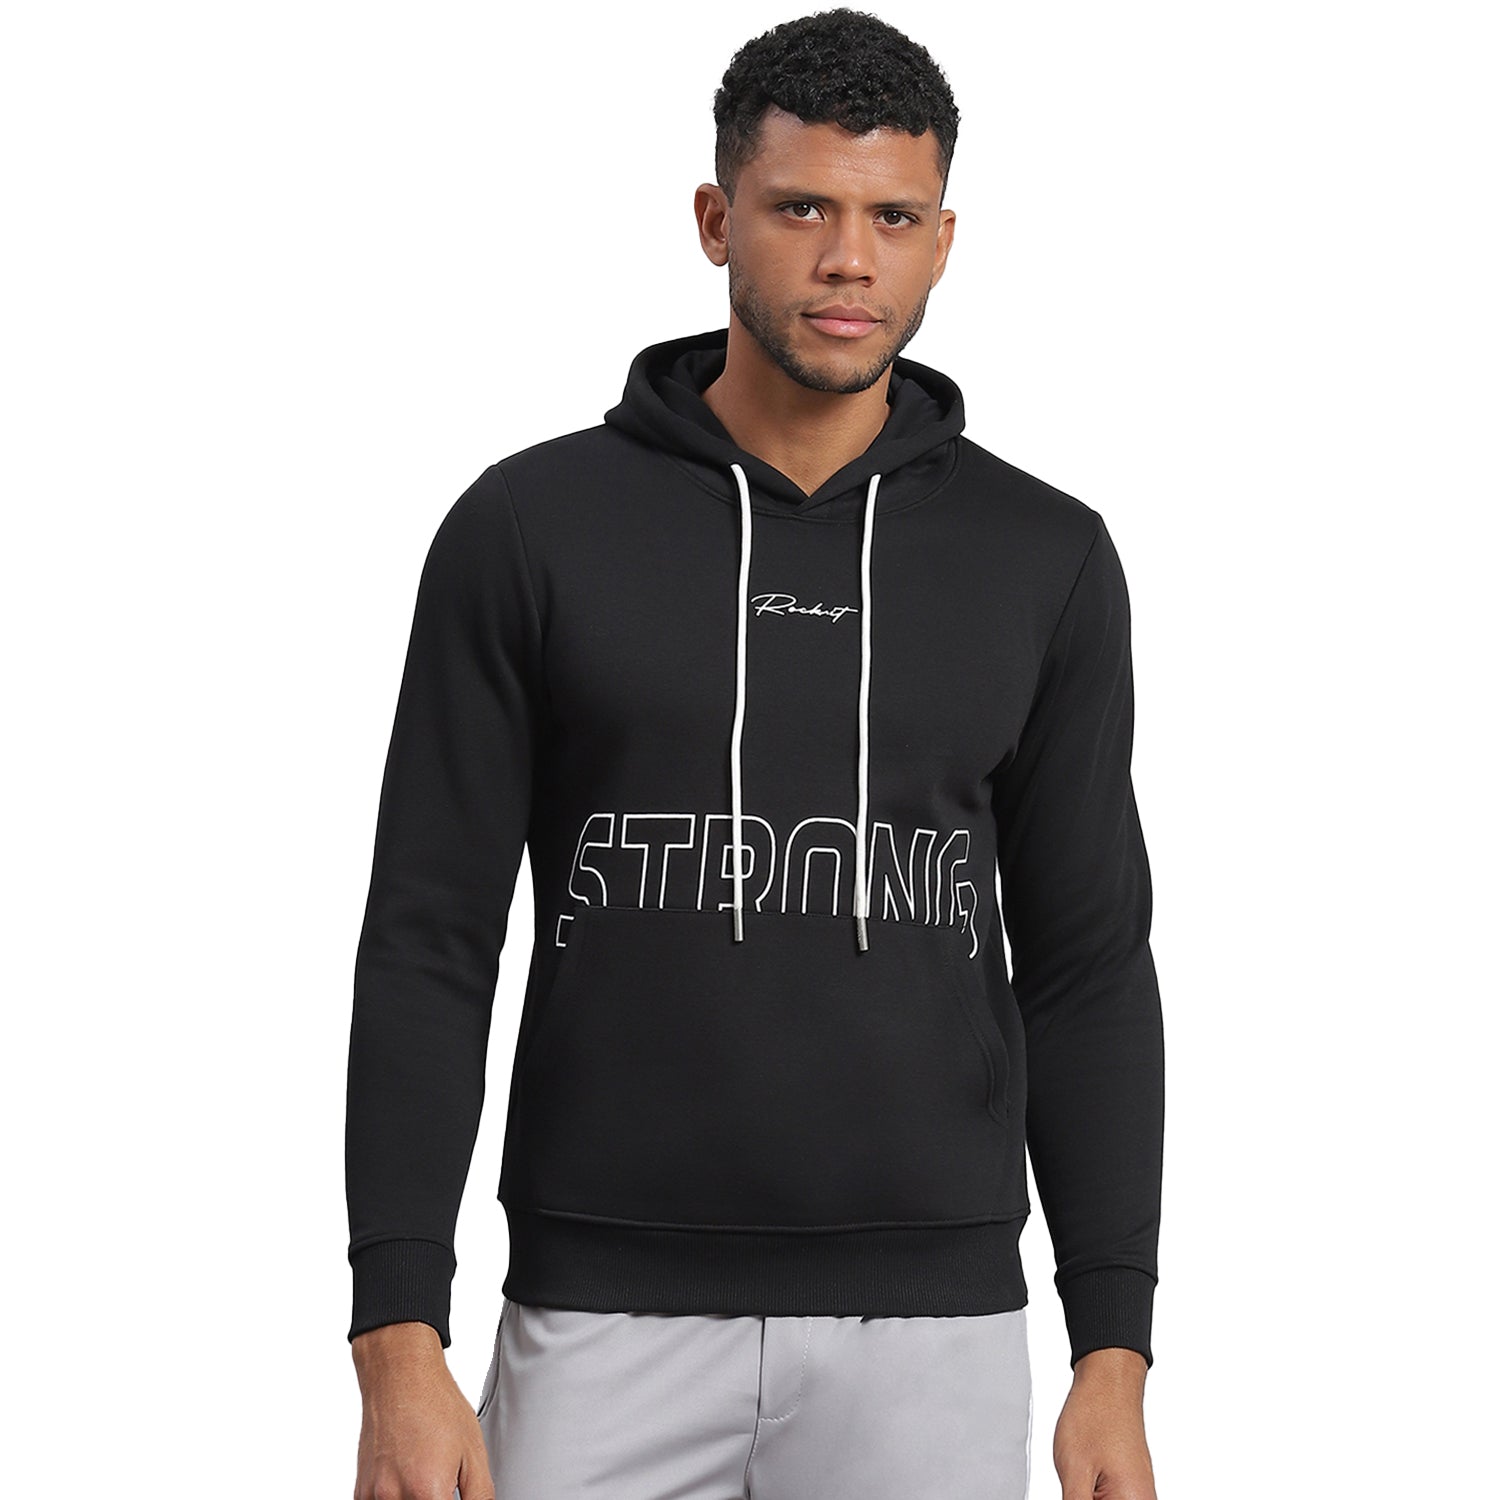 Men Black Printed Hooded Full Sleeve Sweatshirt